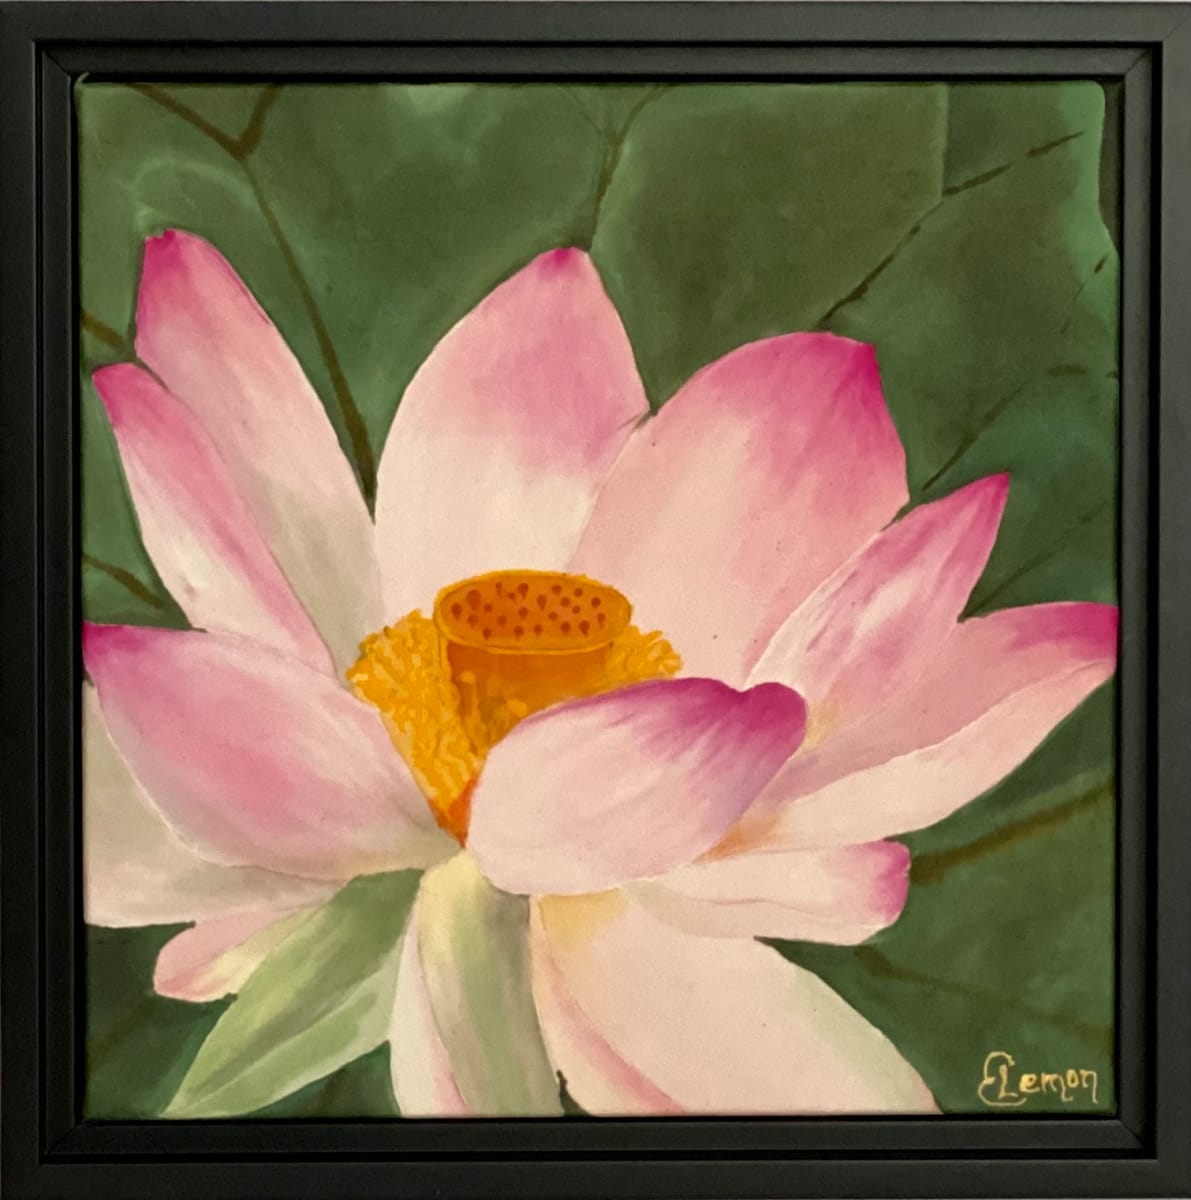 Lotus Revealed by Elizabeth Lemon  Image: Lotus Revealed  - framed